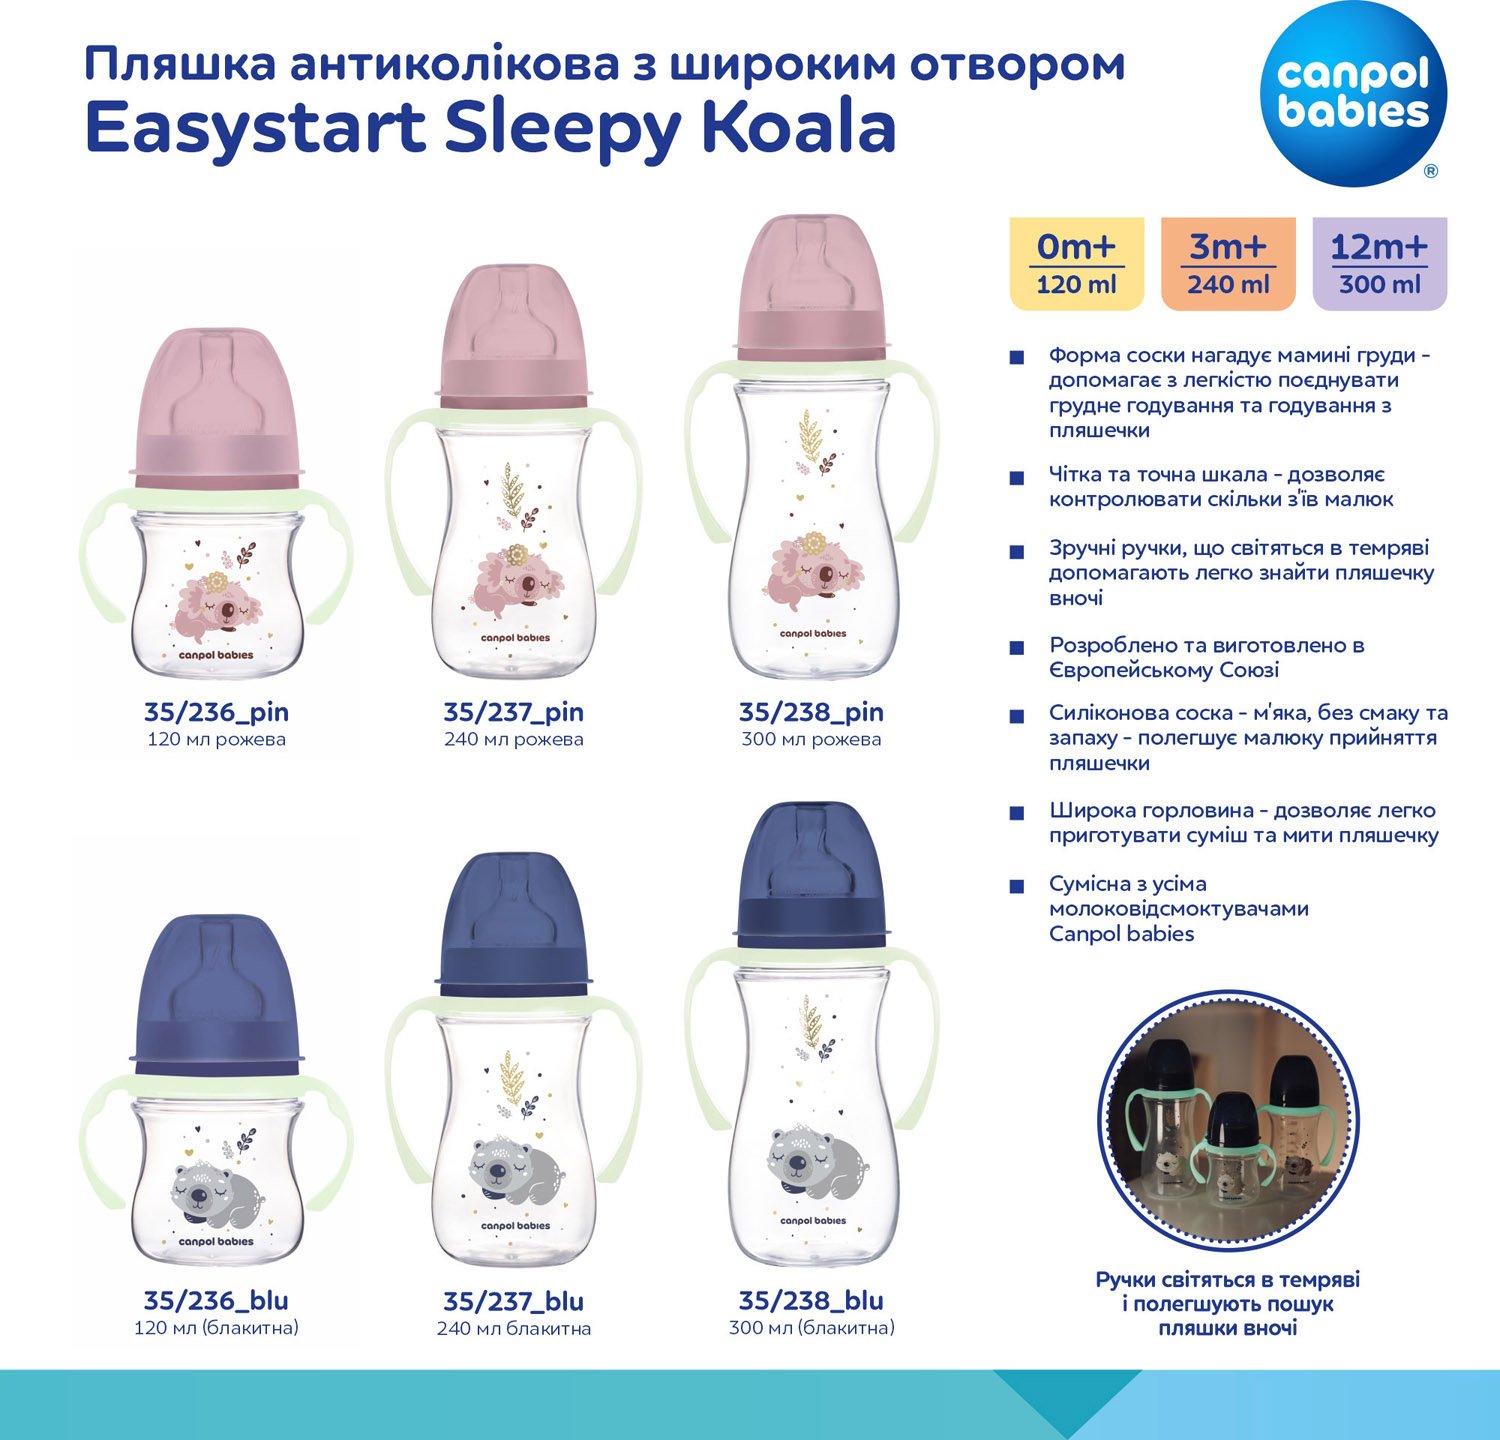 Бутылочка для кормления Canpol babies Easystart Sleepy Koala, антиколиковая, 120 мл, розовая (35/236_pin) - фото 11